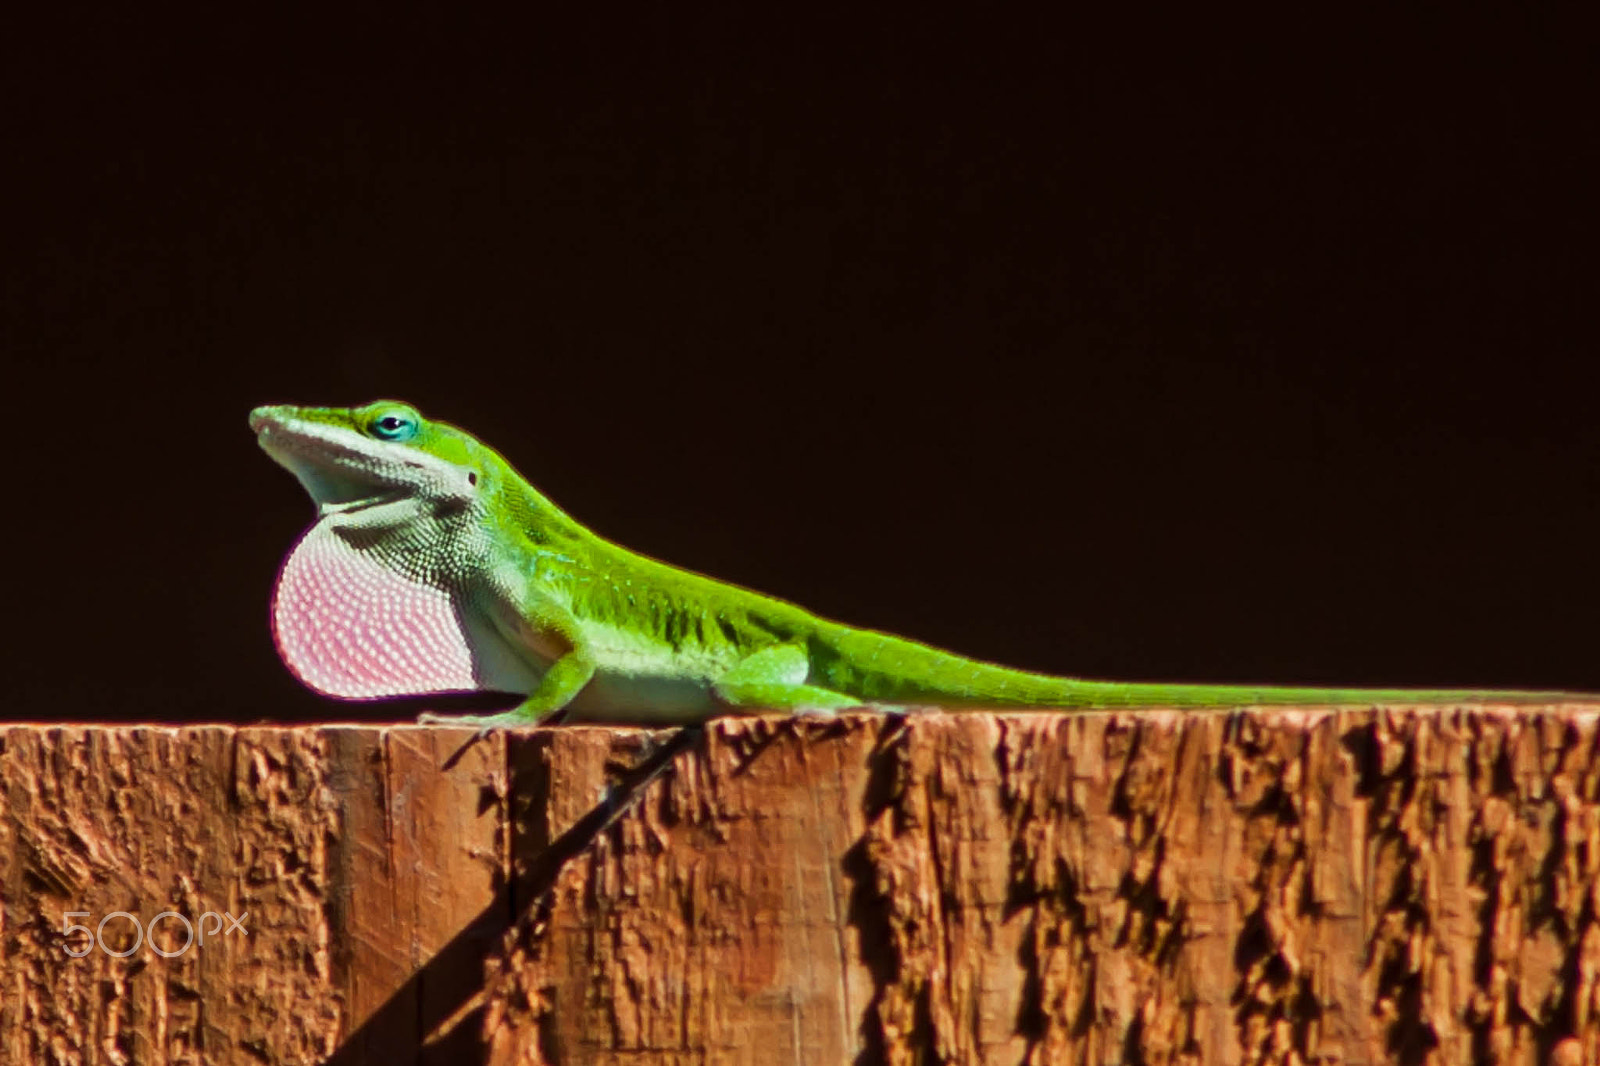 Canon EOS 5D sample photo. The lizard photography